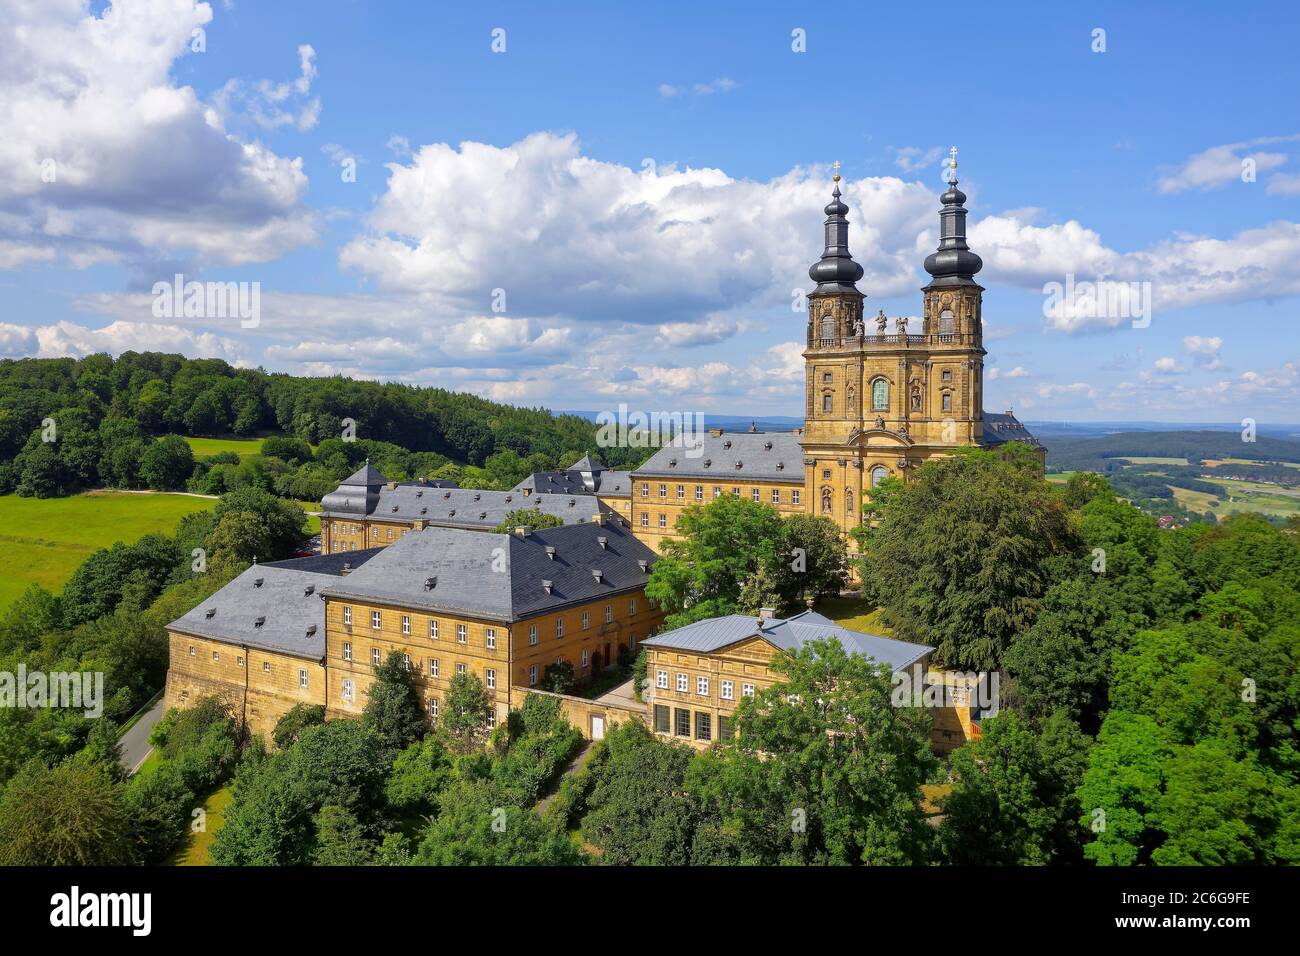 Kloster Banz, ancien monastère bénédictin, baroque du sud de l'Allemagne, près de Bad Staffelstein, quartier de Lichtenfels, Suisse franconienne, Franconie Banque D'Images